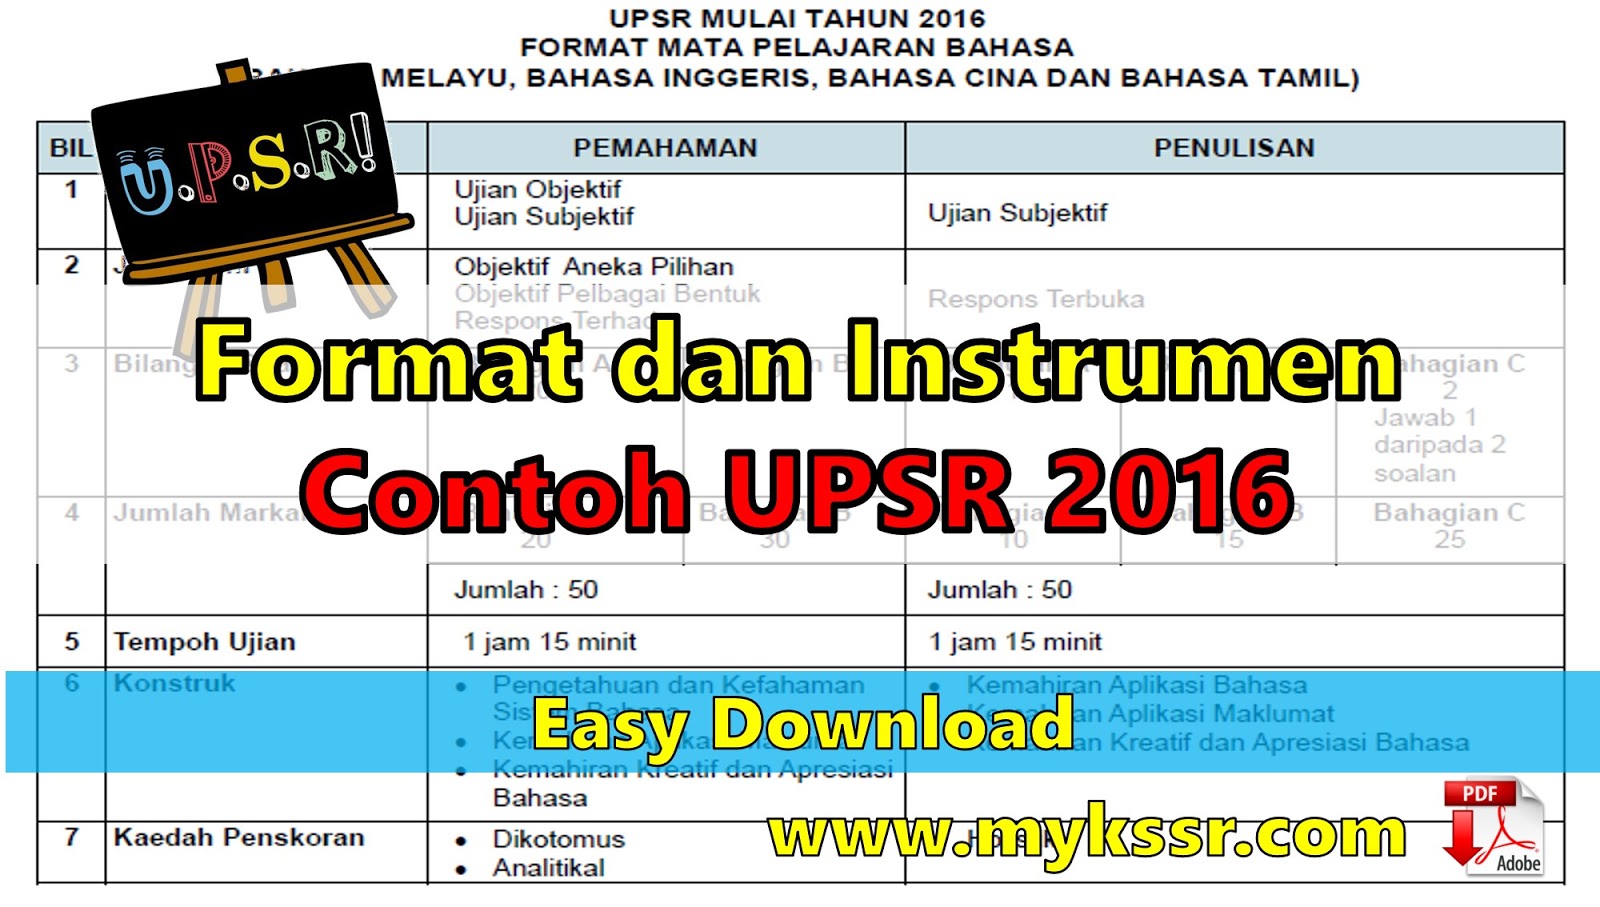 DOWNLOAD Format dan Instrumen Contoh UPSR 2016 - Mykssr.com